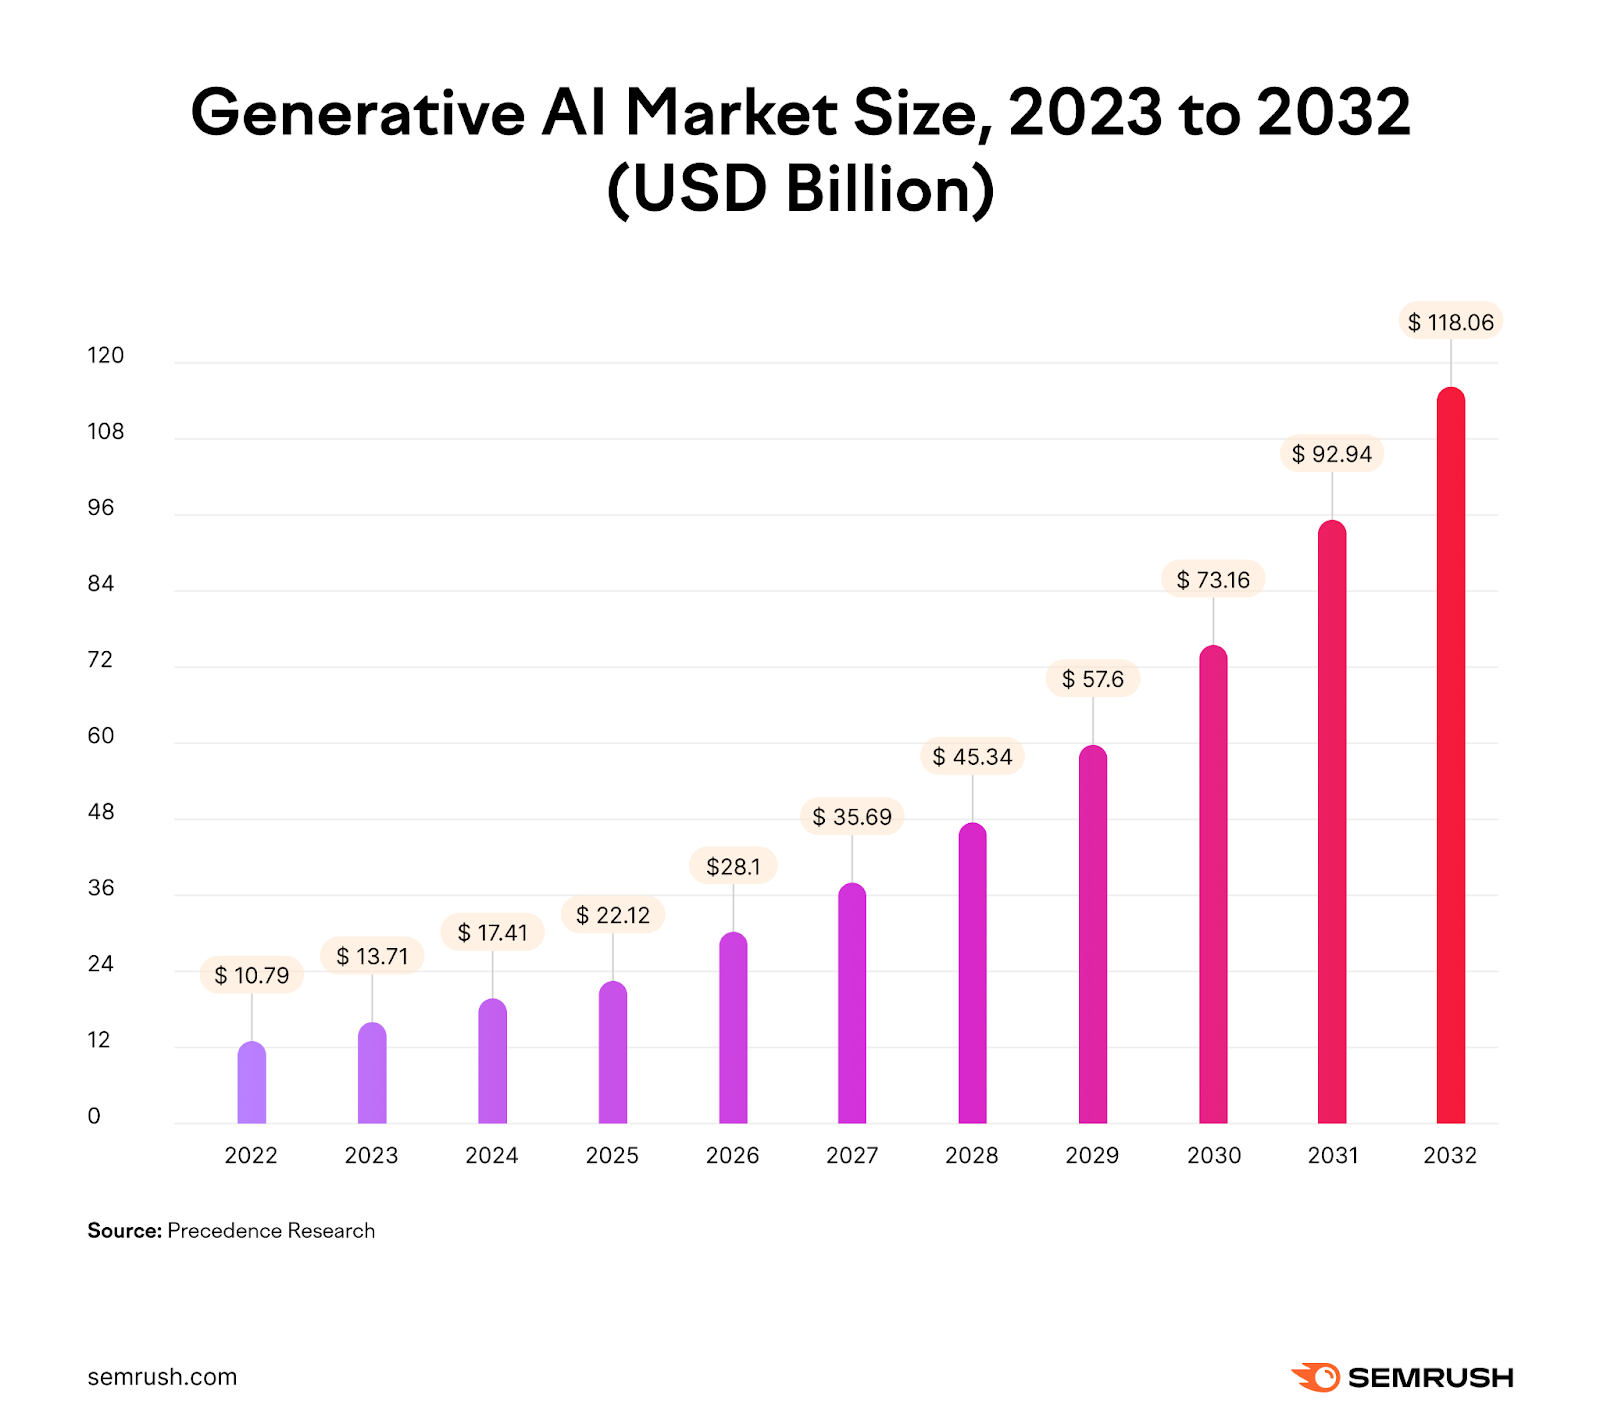 Generative AI market size in USD billion